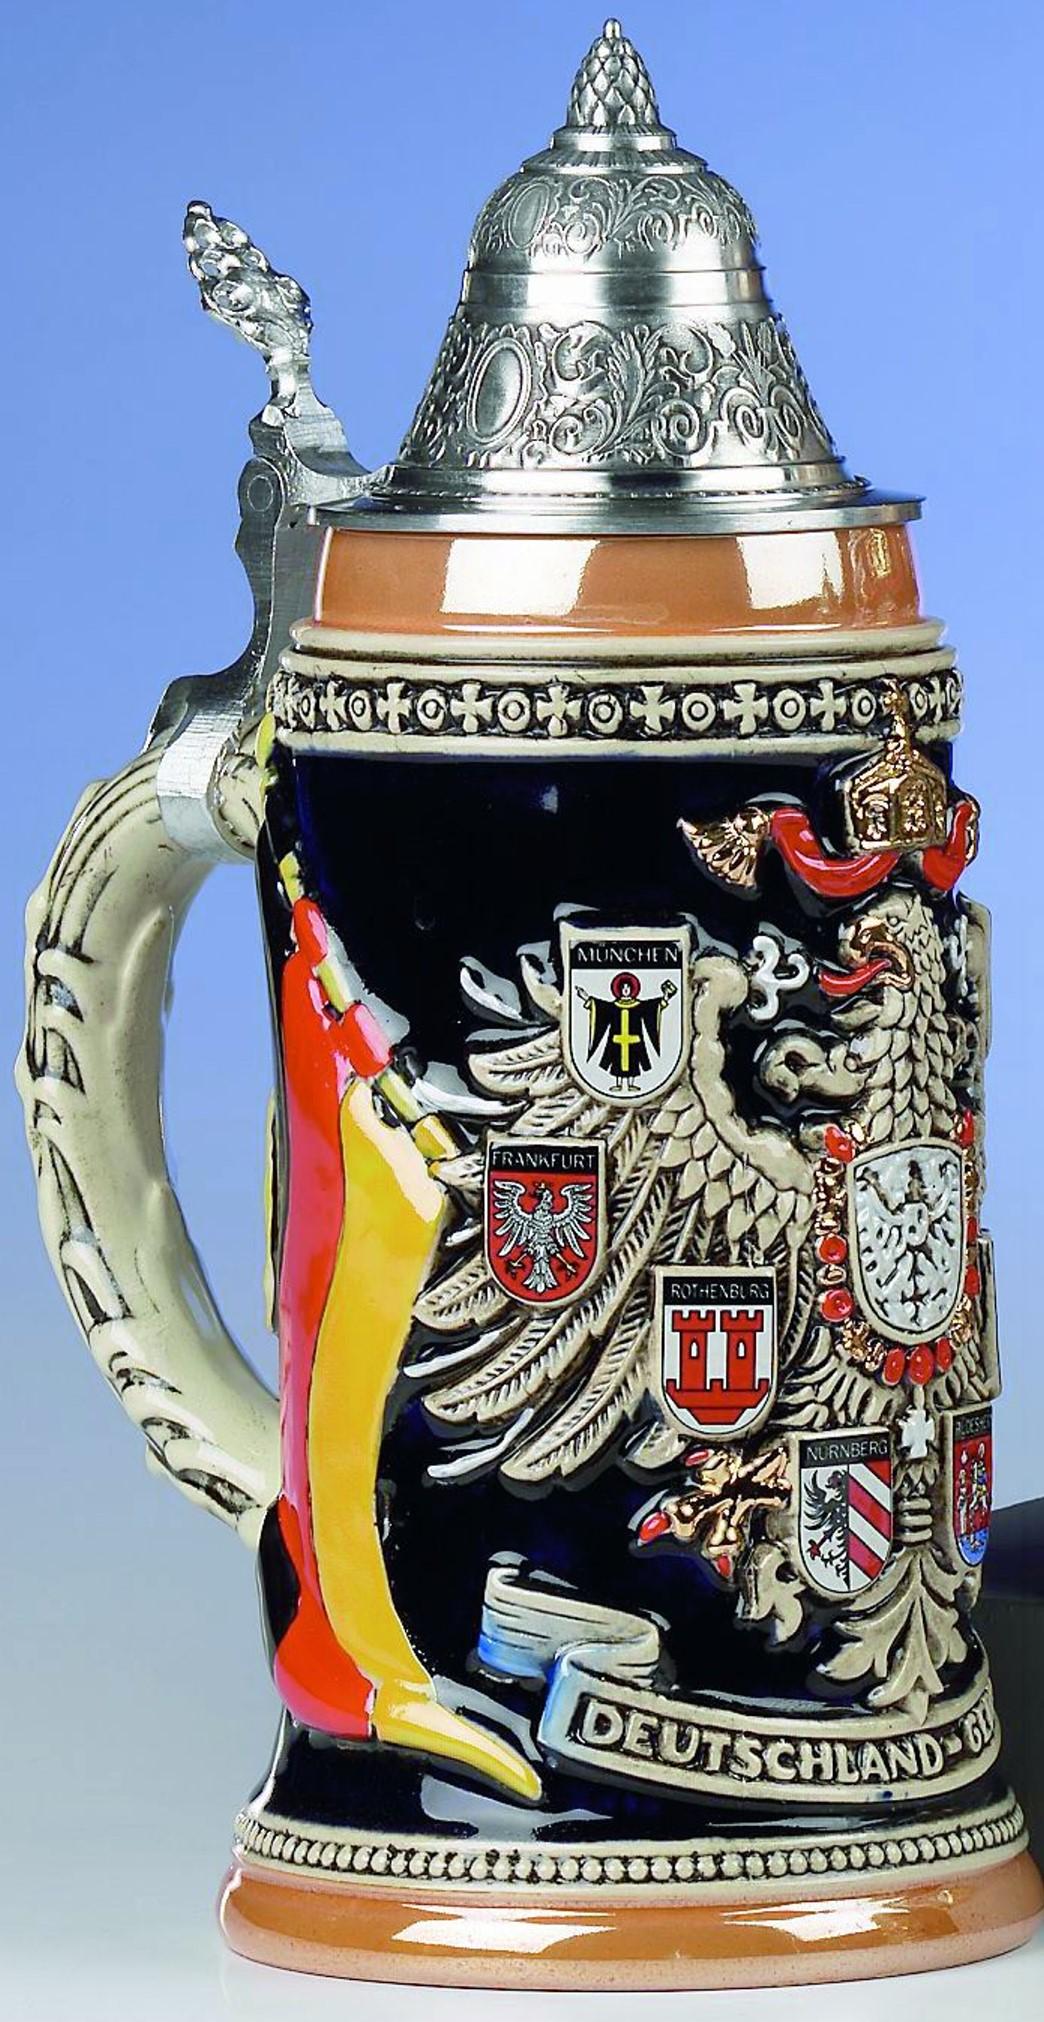 Foto Jarra de cerveza alemana con escudo de Alemania en alto relieve, jarra 0,75 litros